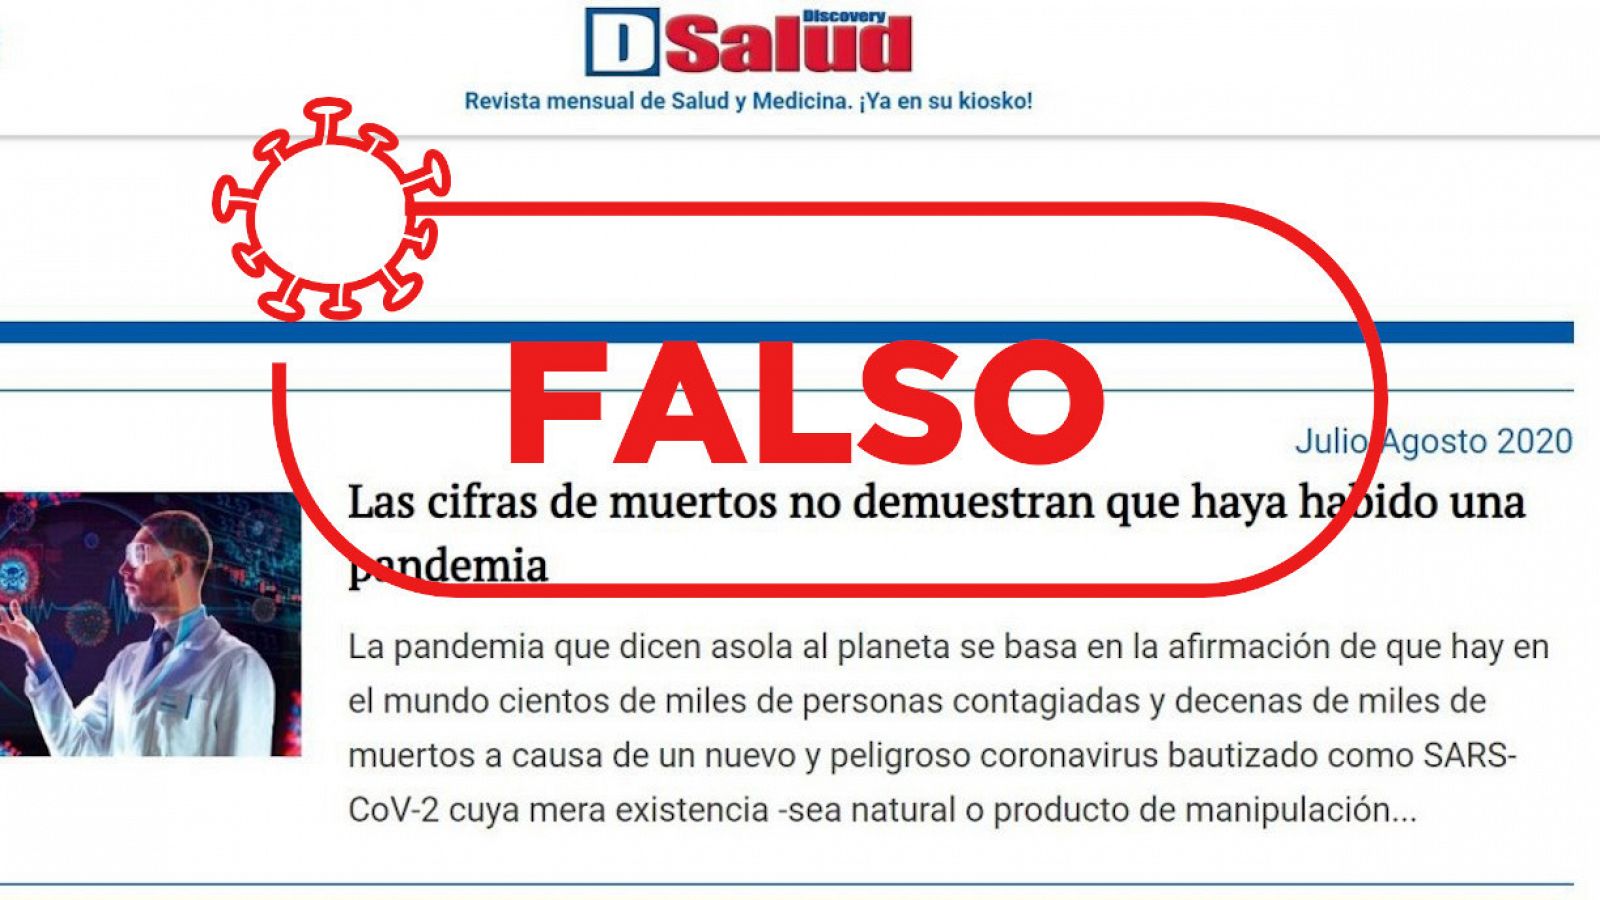 Captura con un detalle de la revista Discovery Salud y el sello de Verifica RTVE con la palabra "falso".